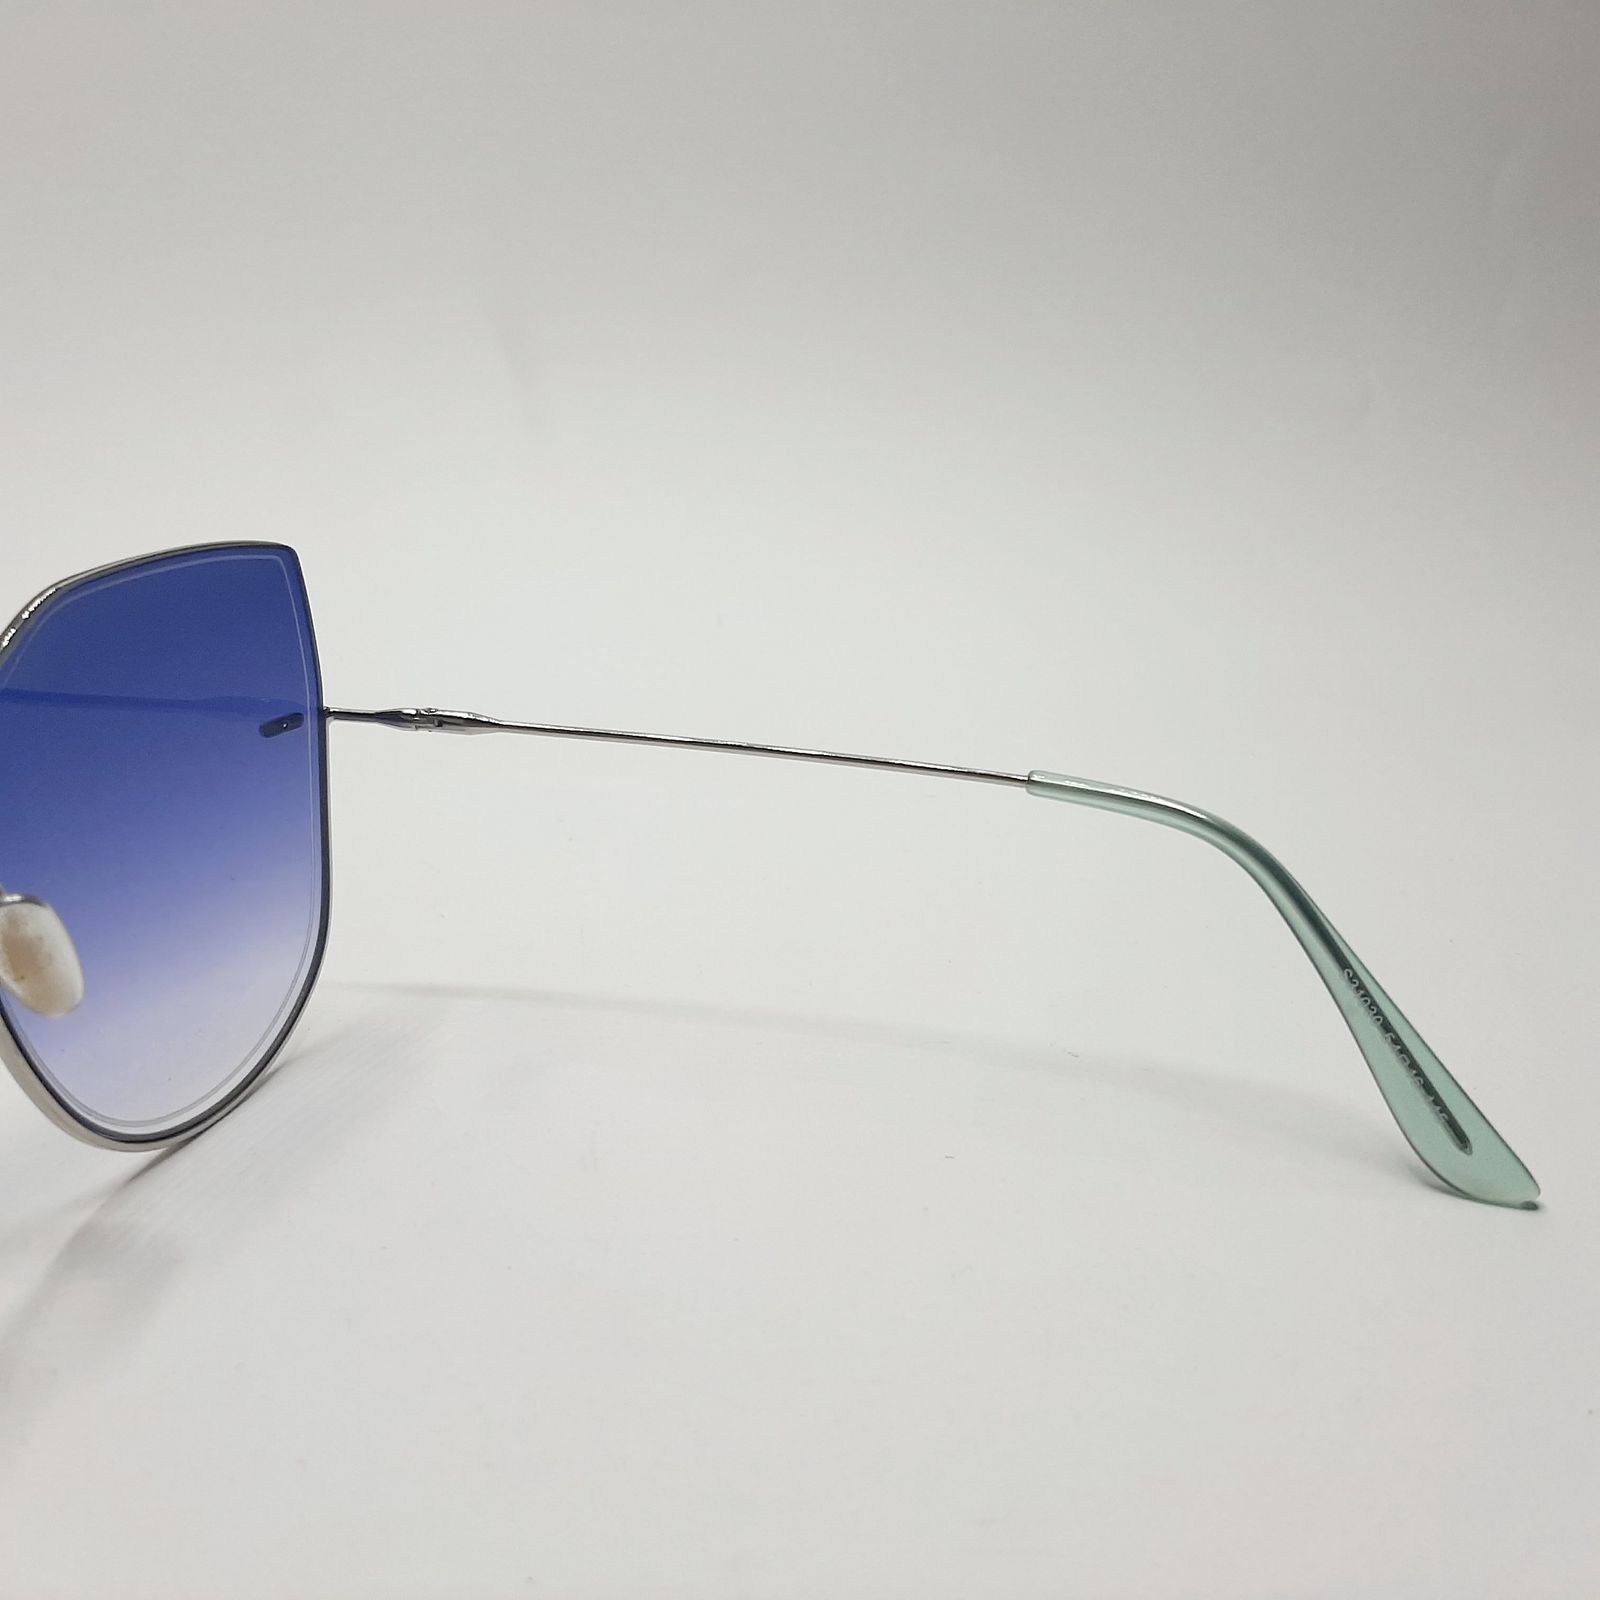 عینک آفتابی مدل S31030c21 -  - 7